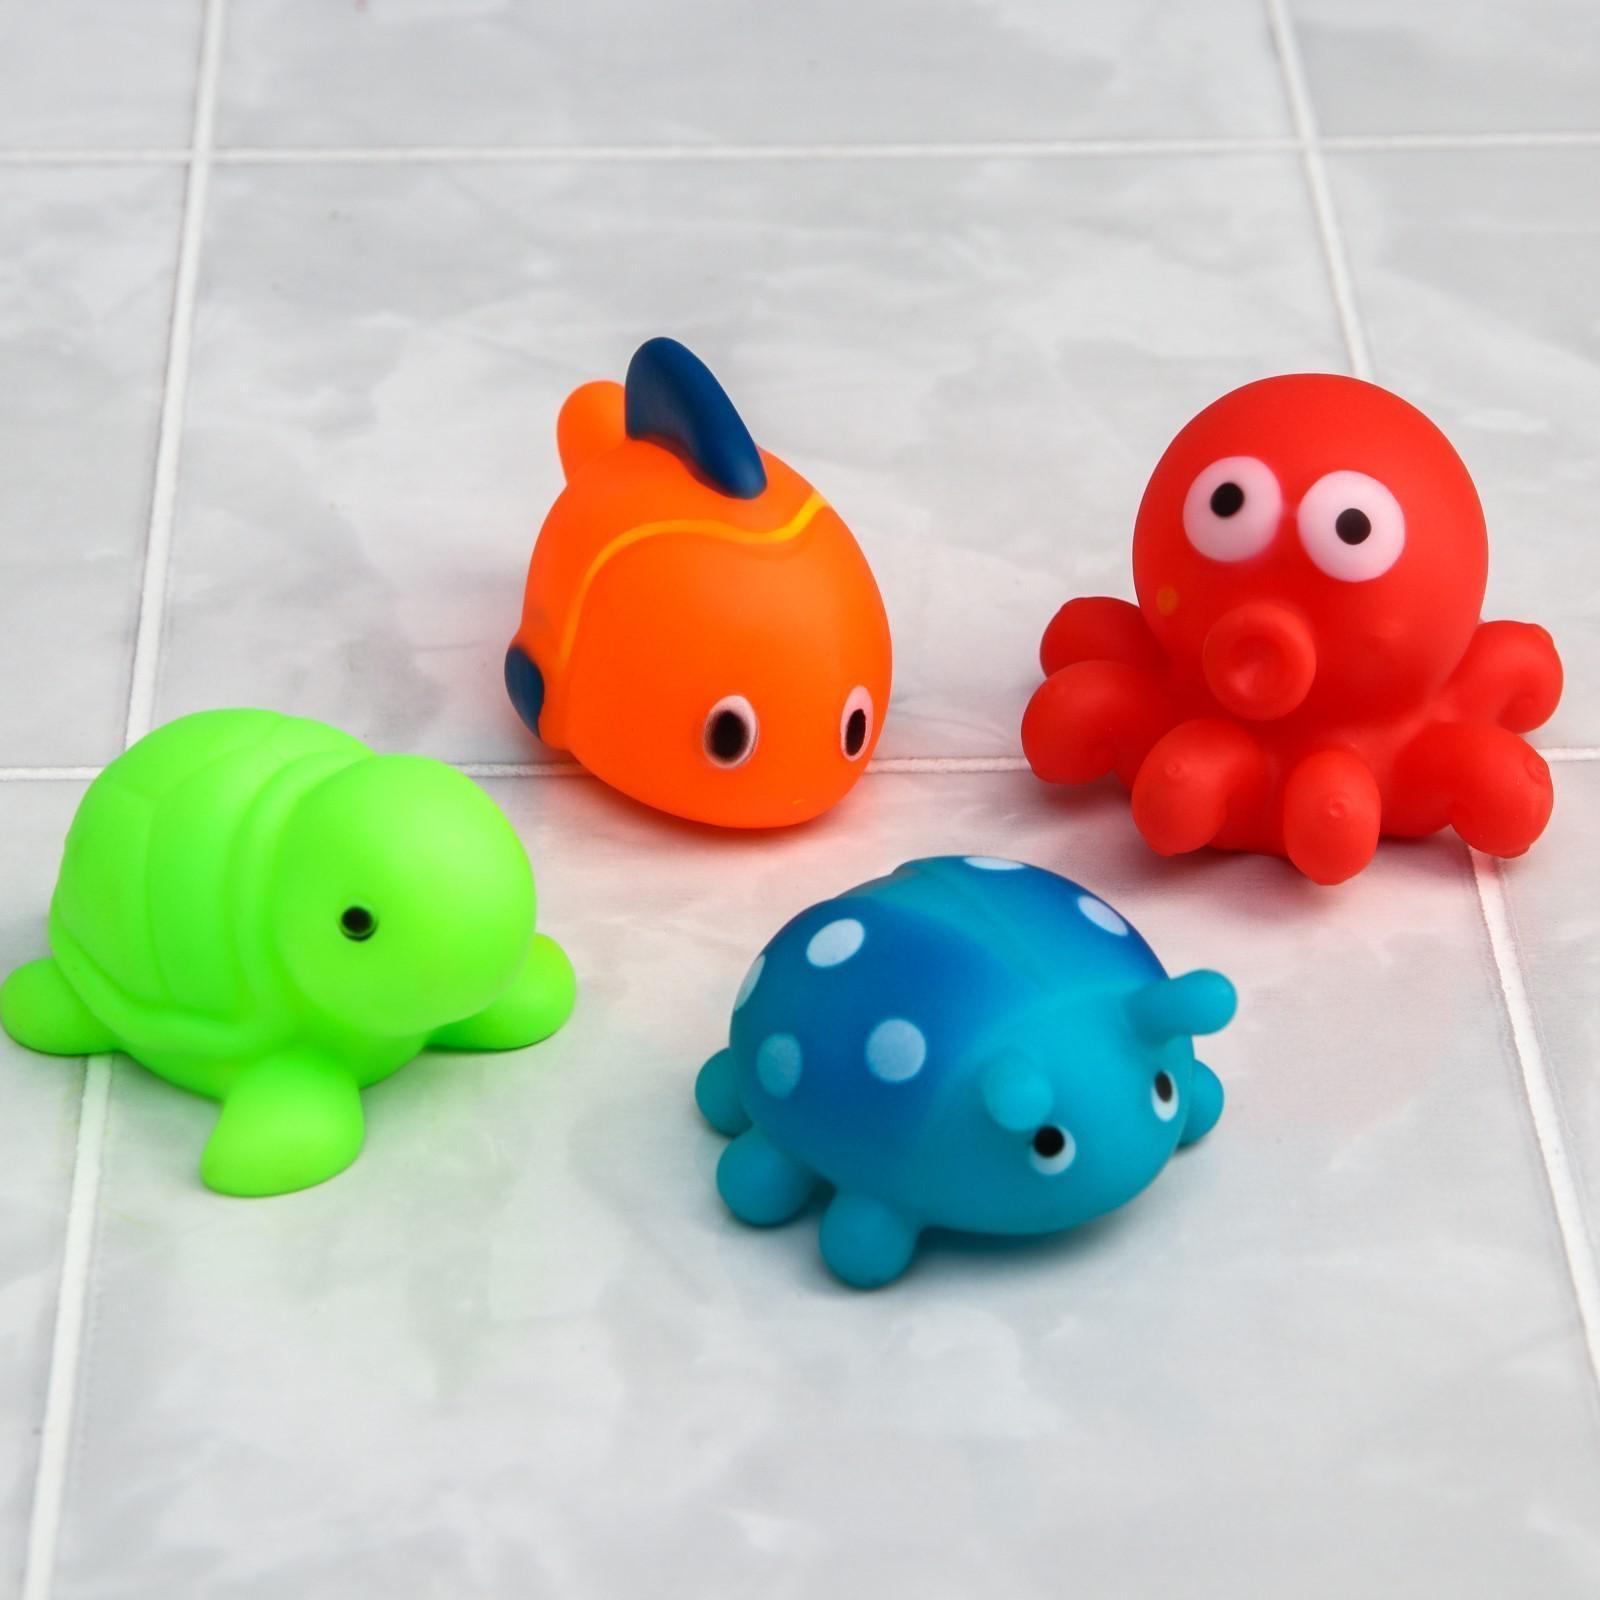 Набор игрушек для игры в ванне «Малыши», 4 шт., виды МИКС